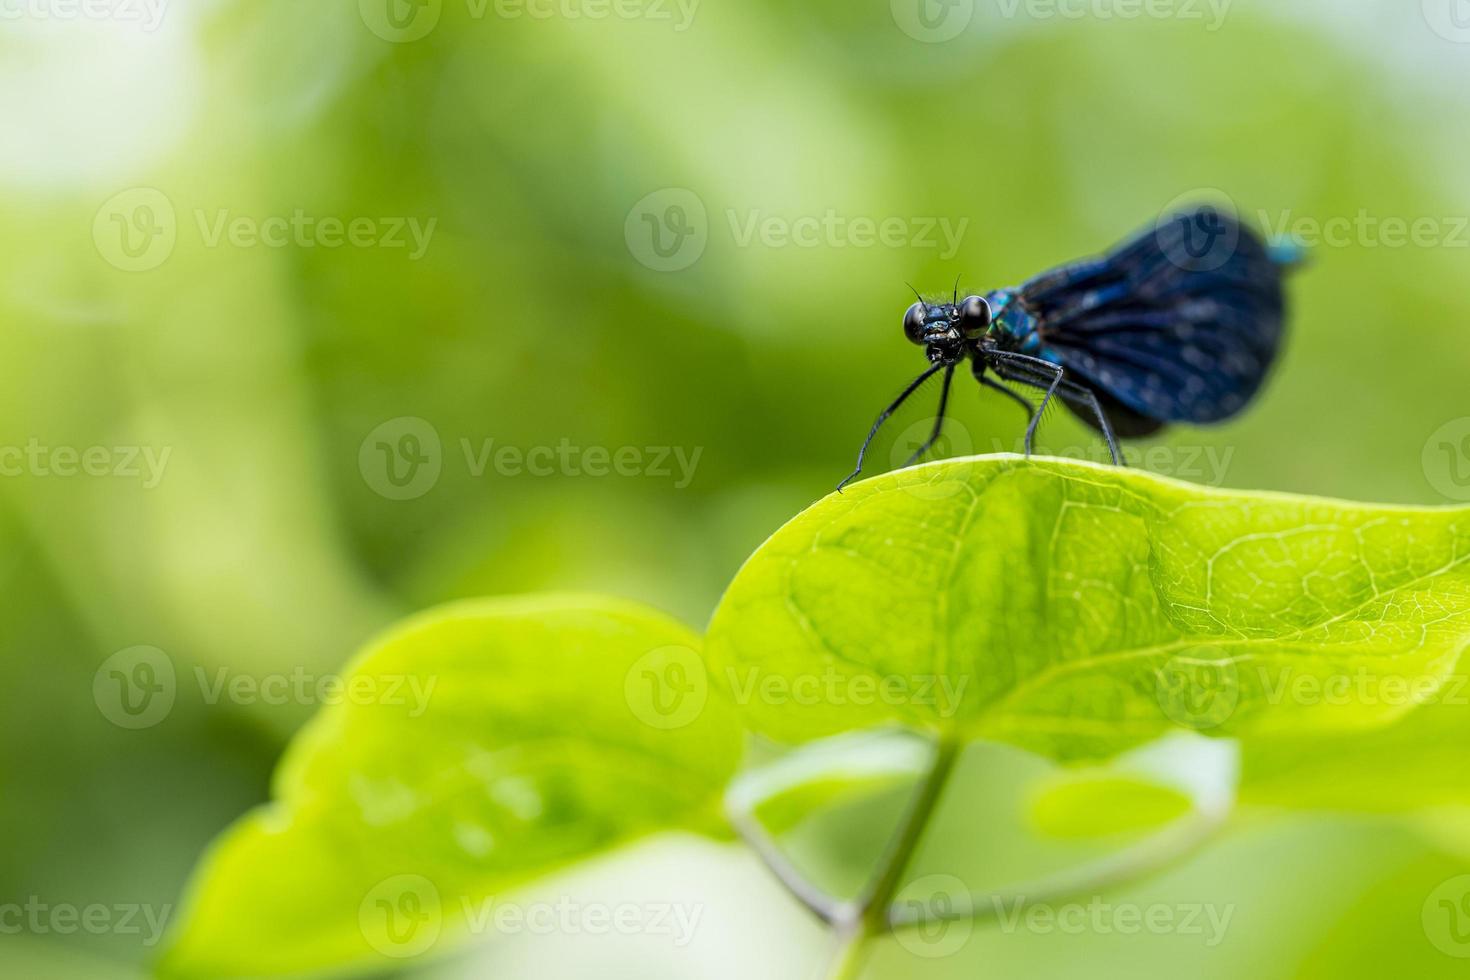 primer plano de una libélula negra sentada en una hoja a la luz del sol. foto